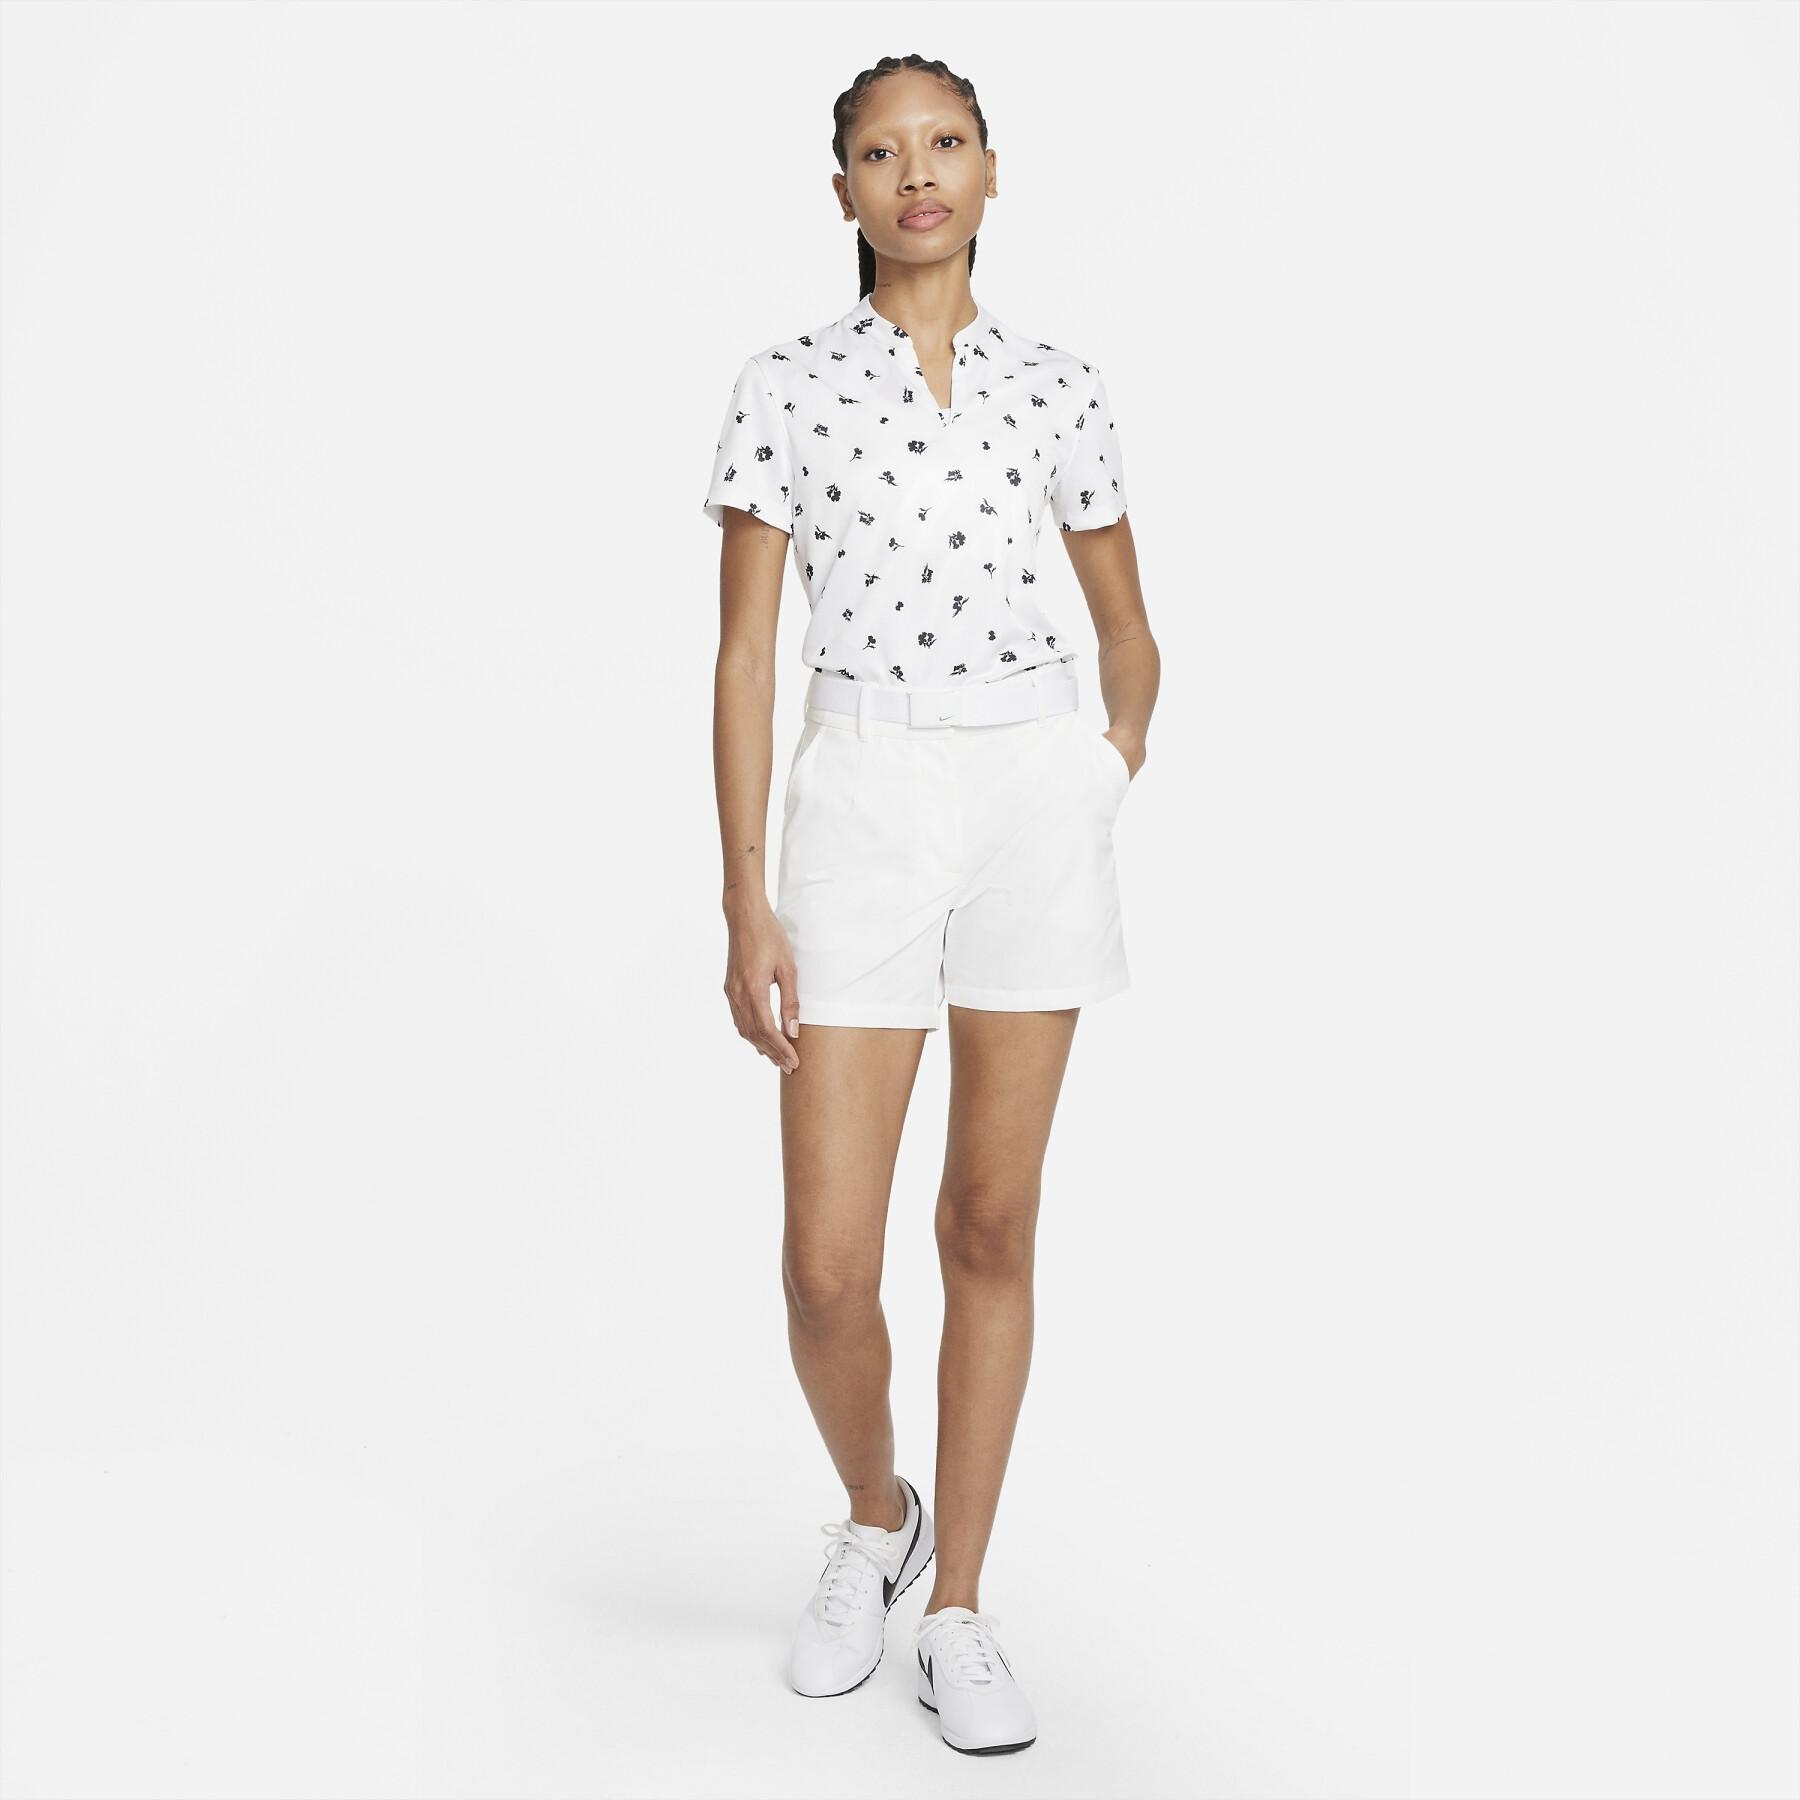 Women's shorts Nike Tour Golf